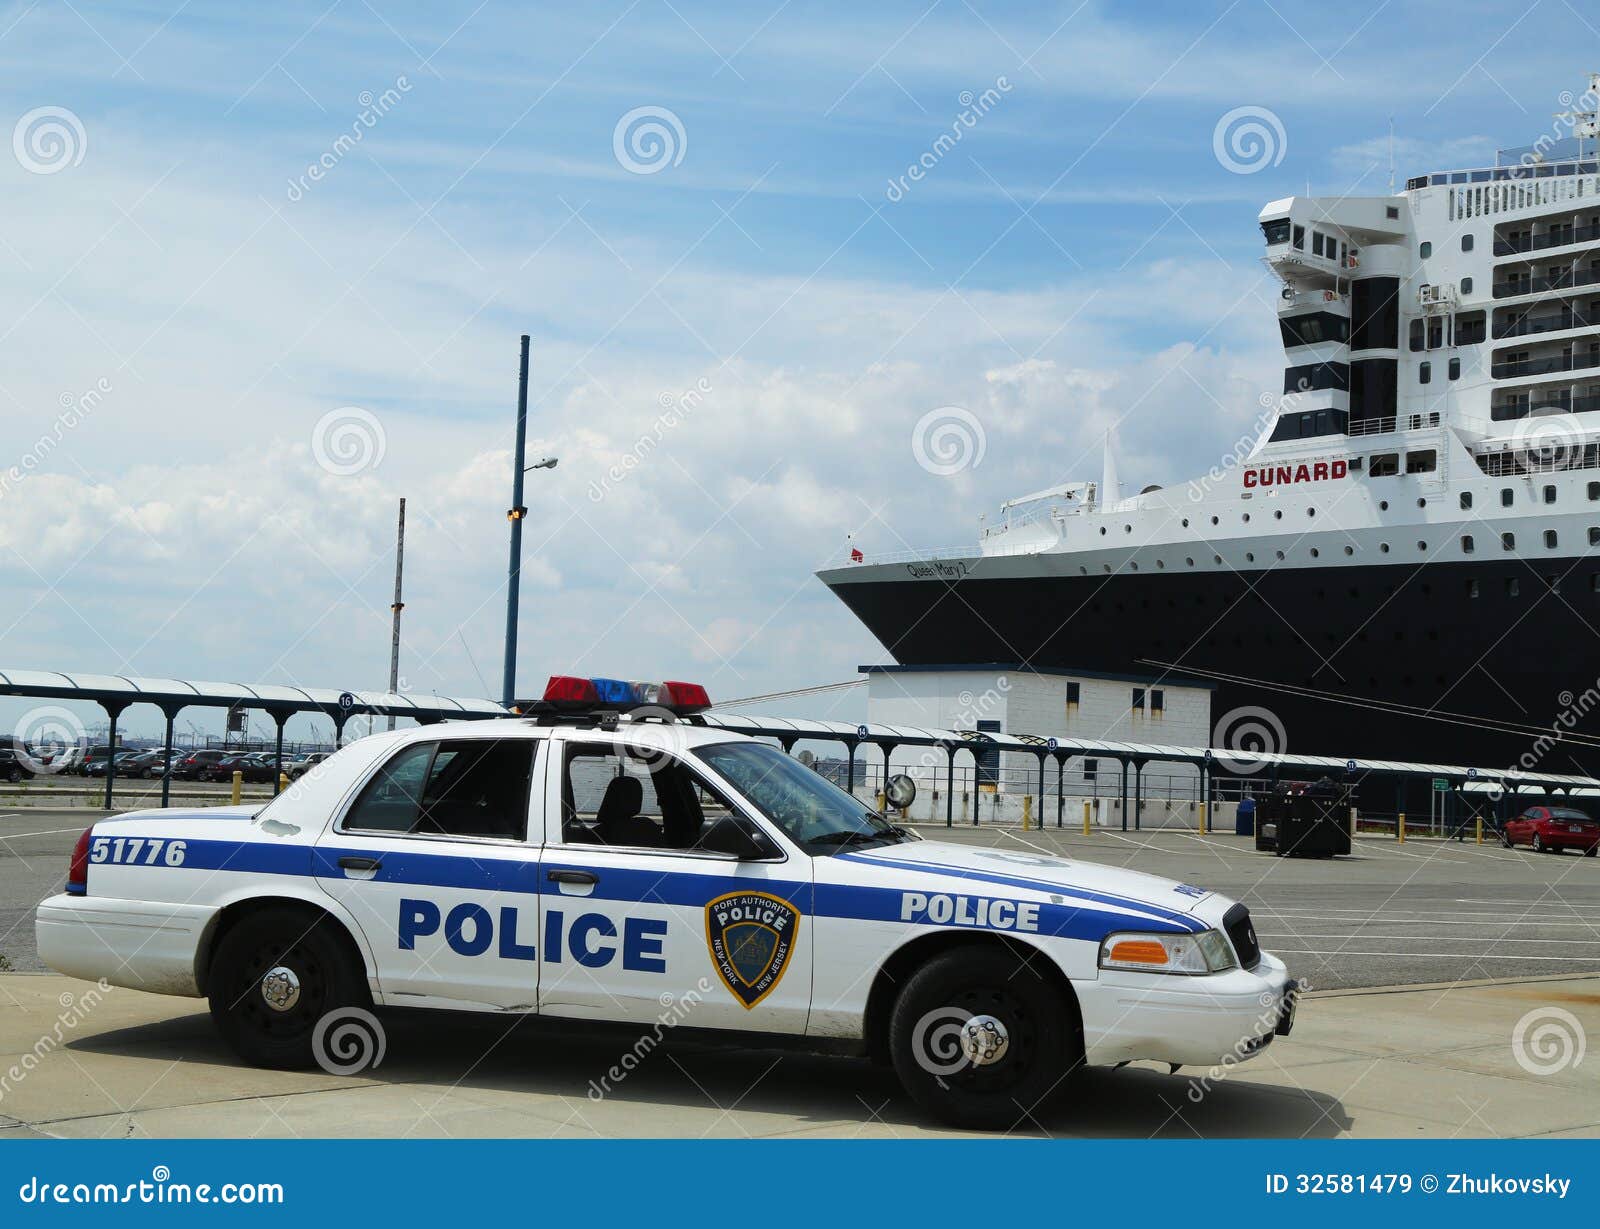 Providin de New York-new Jersey da polícia da autoridade portuária. NEW YORK CITY - 27 DE JULHO: A polícia New York-new Jersey da autoridade portuária que fornecem a segurança para o navio de cruzeiros de Queen Mary 2 entrou no terminal do cruzeiro de Brooklyn o 27 de julho de 2013.